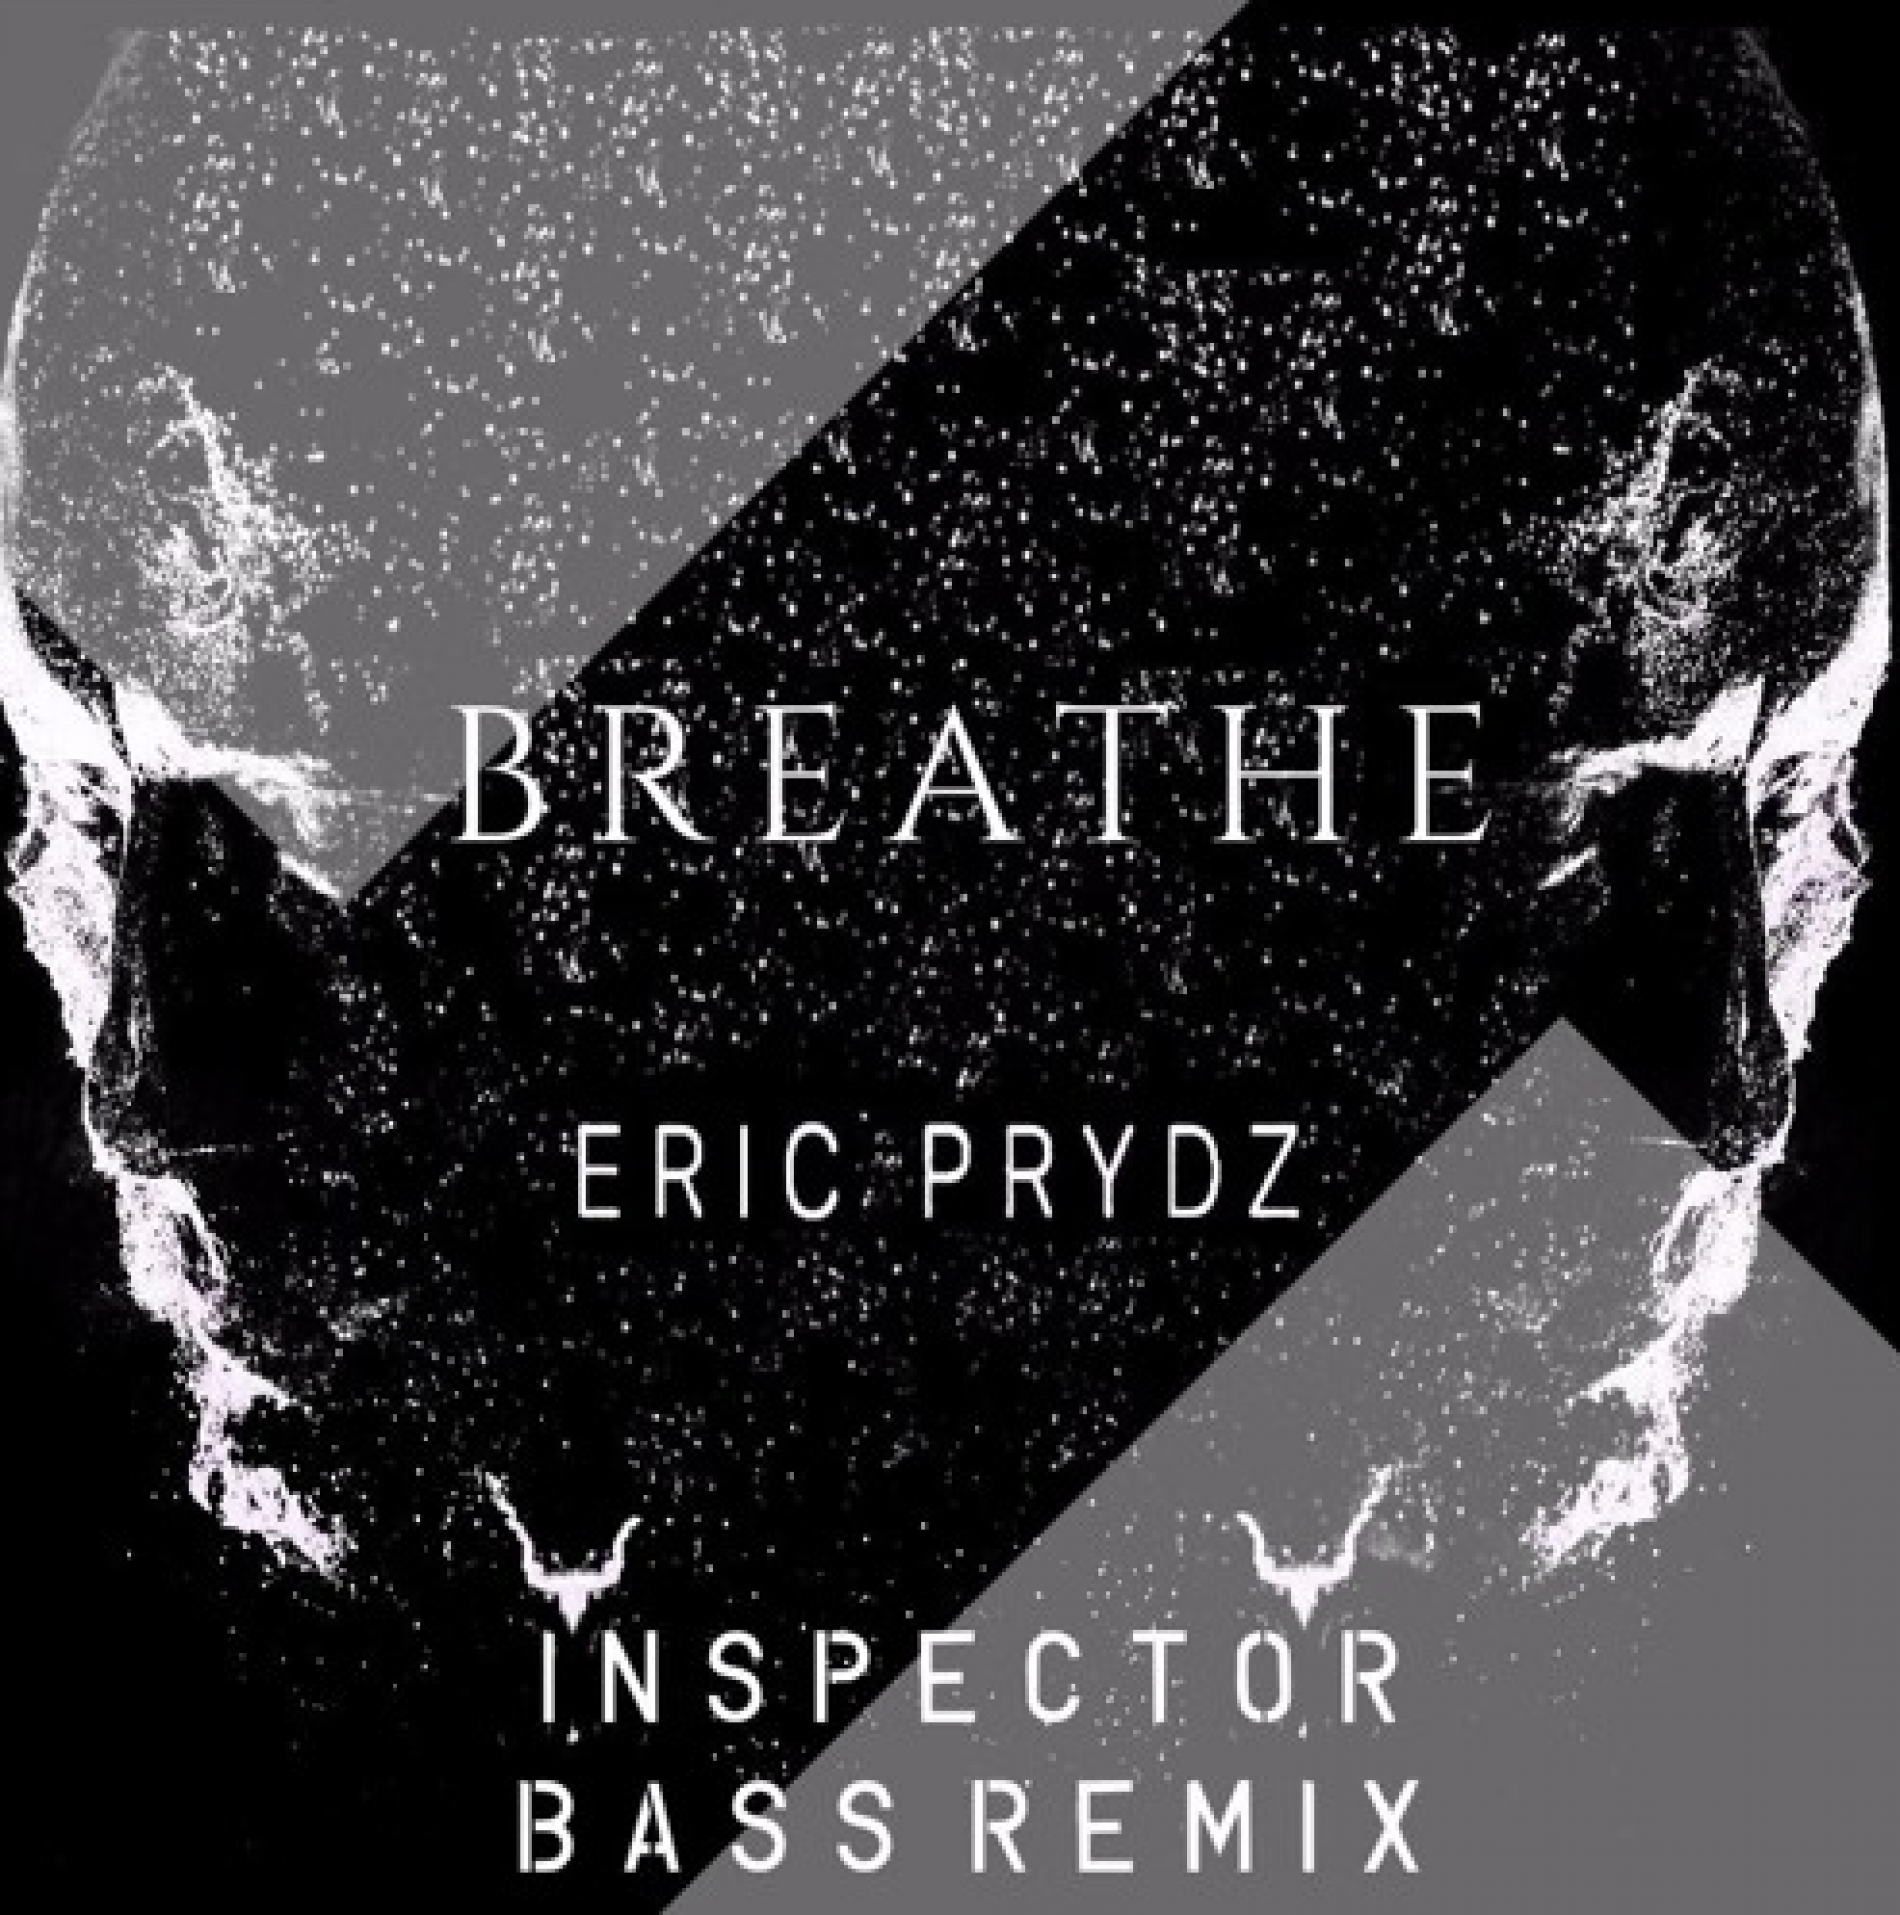 Eric Prydz – ‘Breathe’ (Inspector Bass Remix)